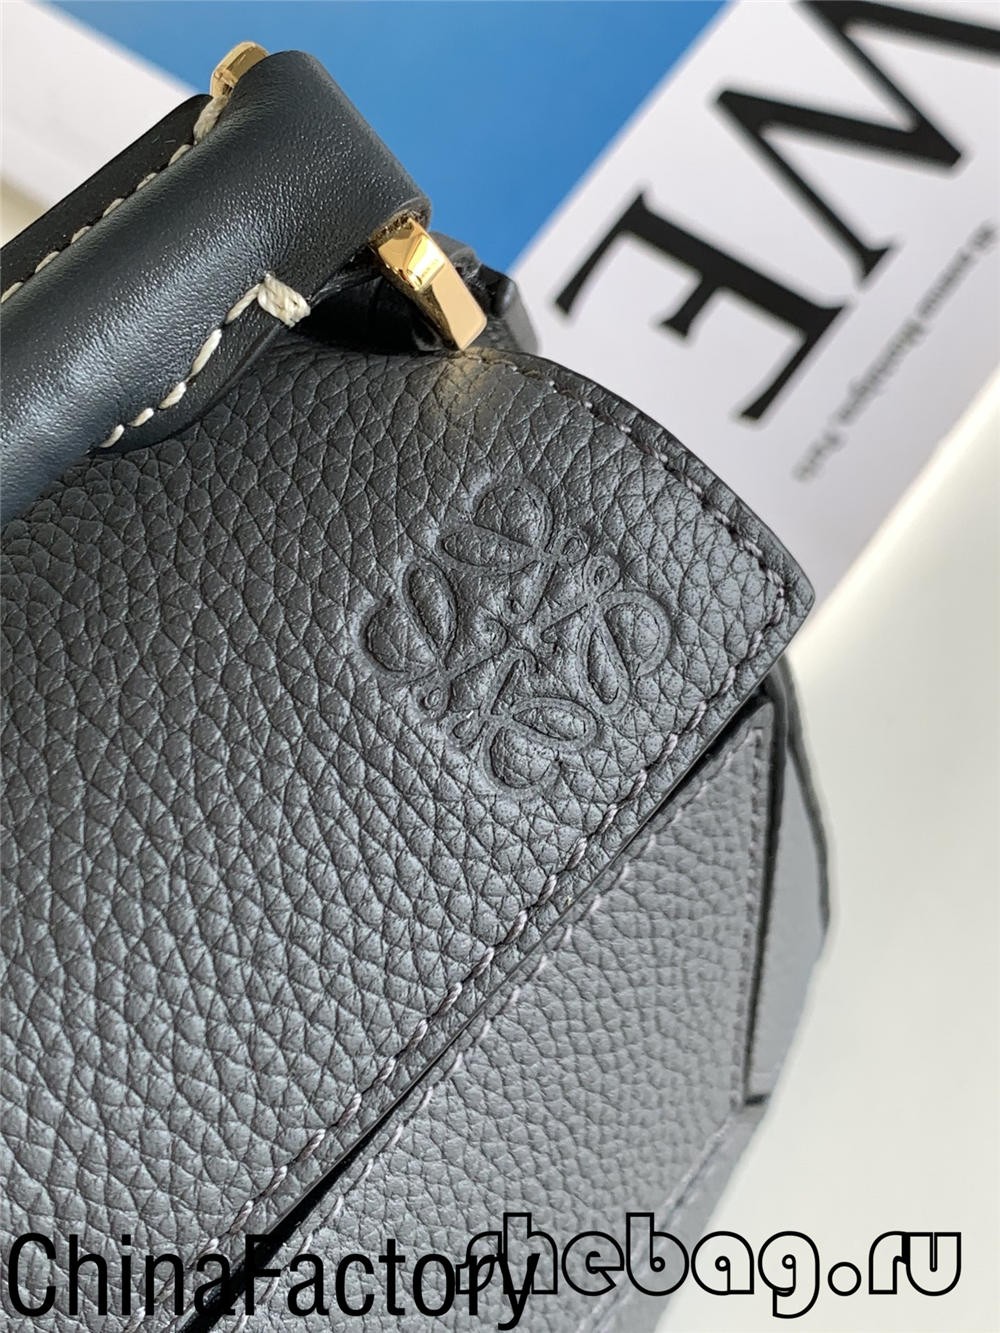 Migliore recensione della replica della borsa Loewe: Loewe Cubi (aggiornato nel 2022)-Best Quality Fake Louis Vuitton Bag Online Store, Replica designer bag ru